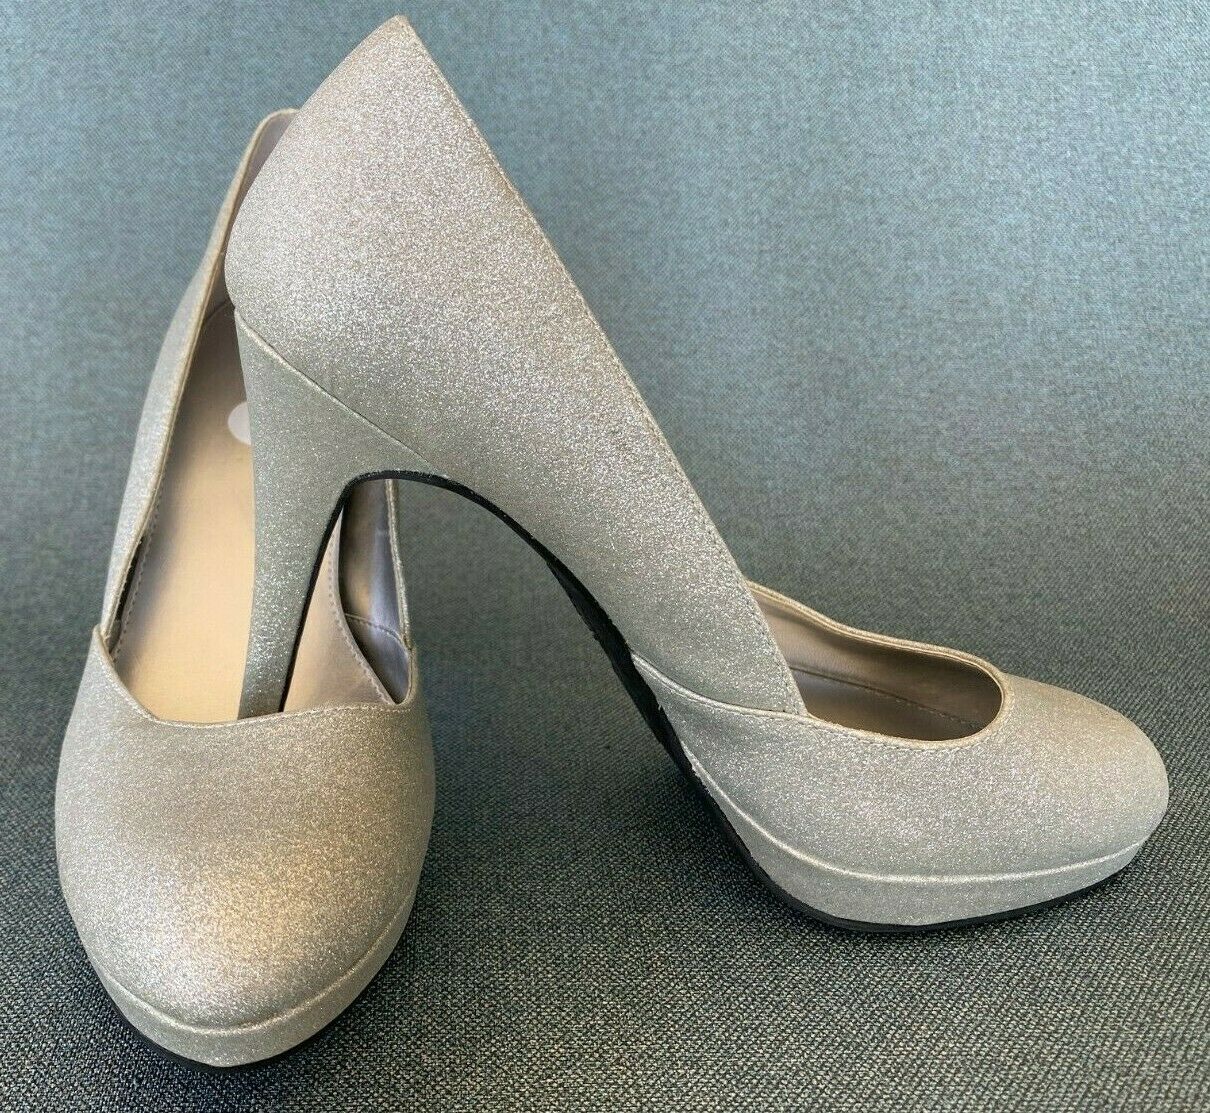 FIONI Silver Sparkle Platform Dress Shoes 4" Stiletto Heels Pumps Sz8 Excellent!